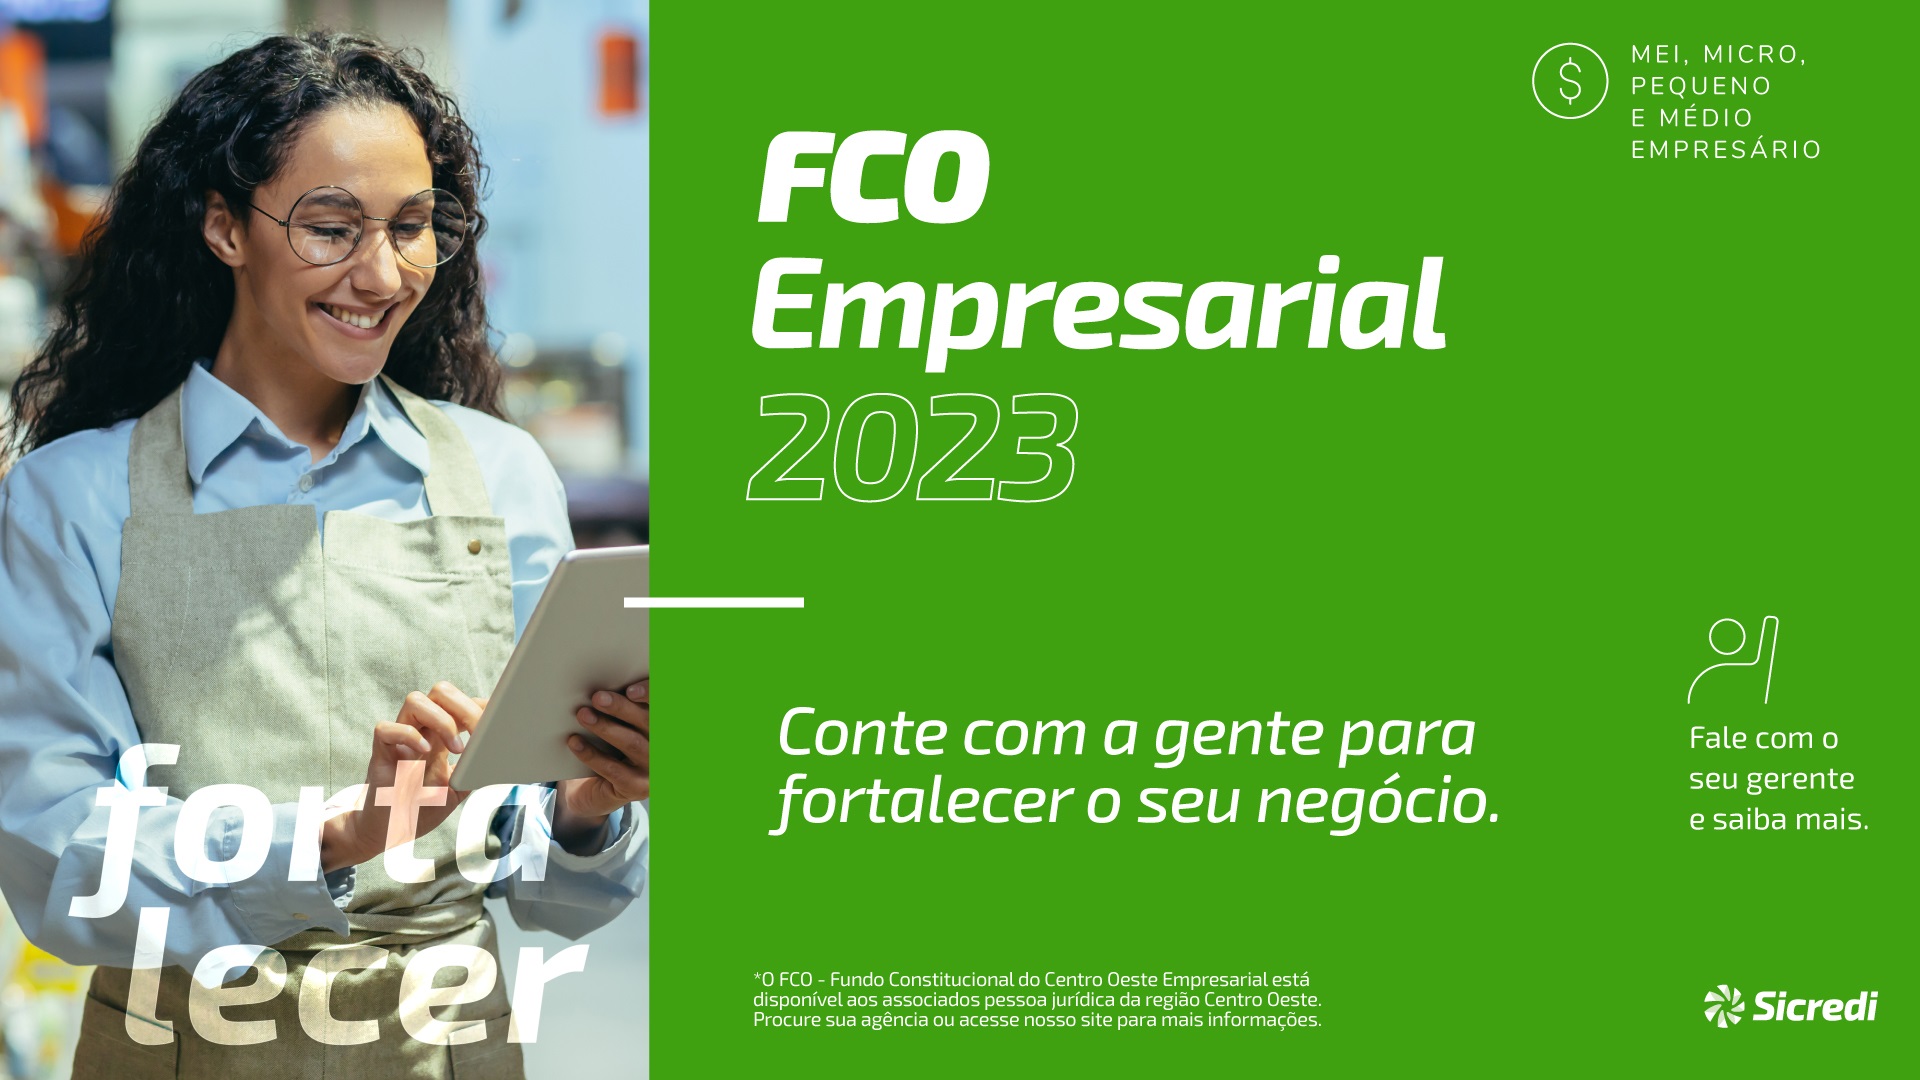 Photo of Sicredi Araxingu disponibiliza FCO Empresarial para fomentar pequenos e médios negócios na região